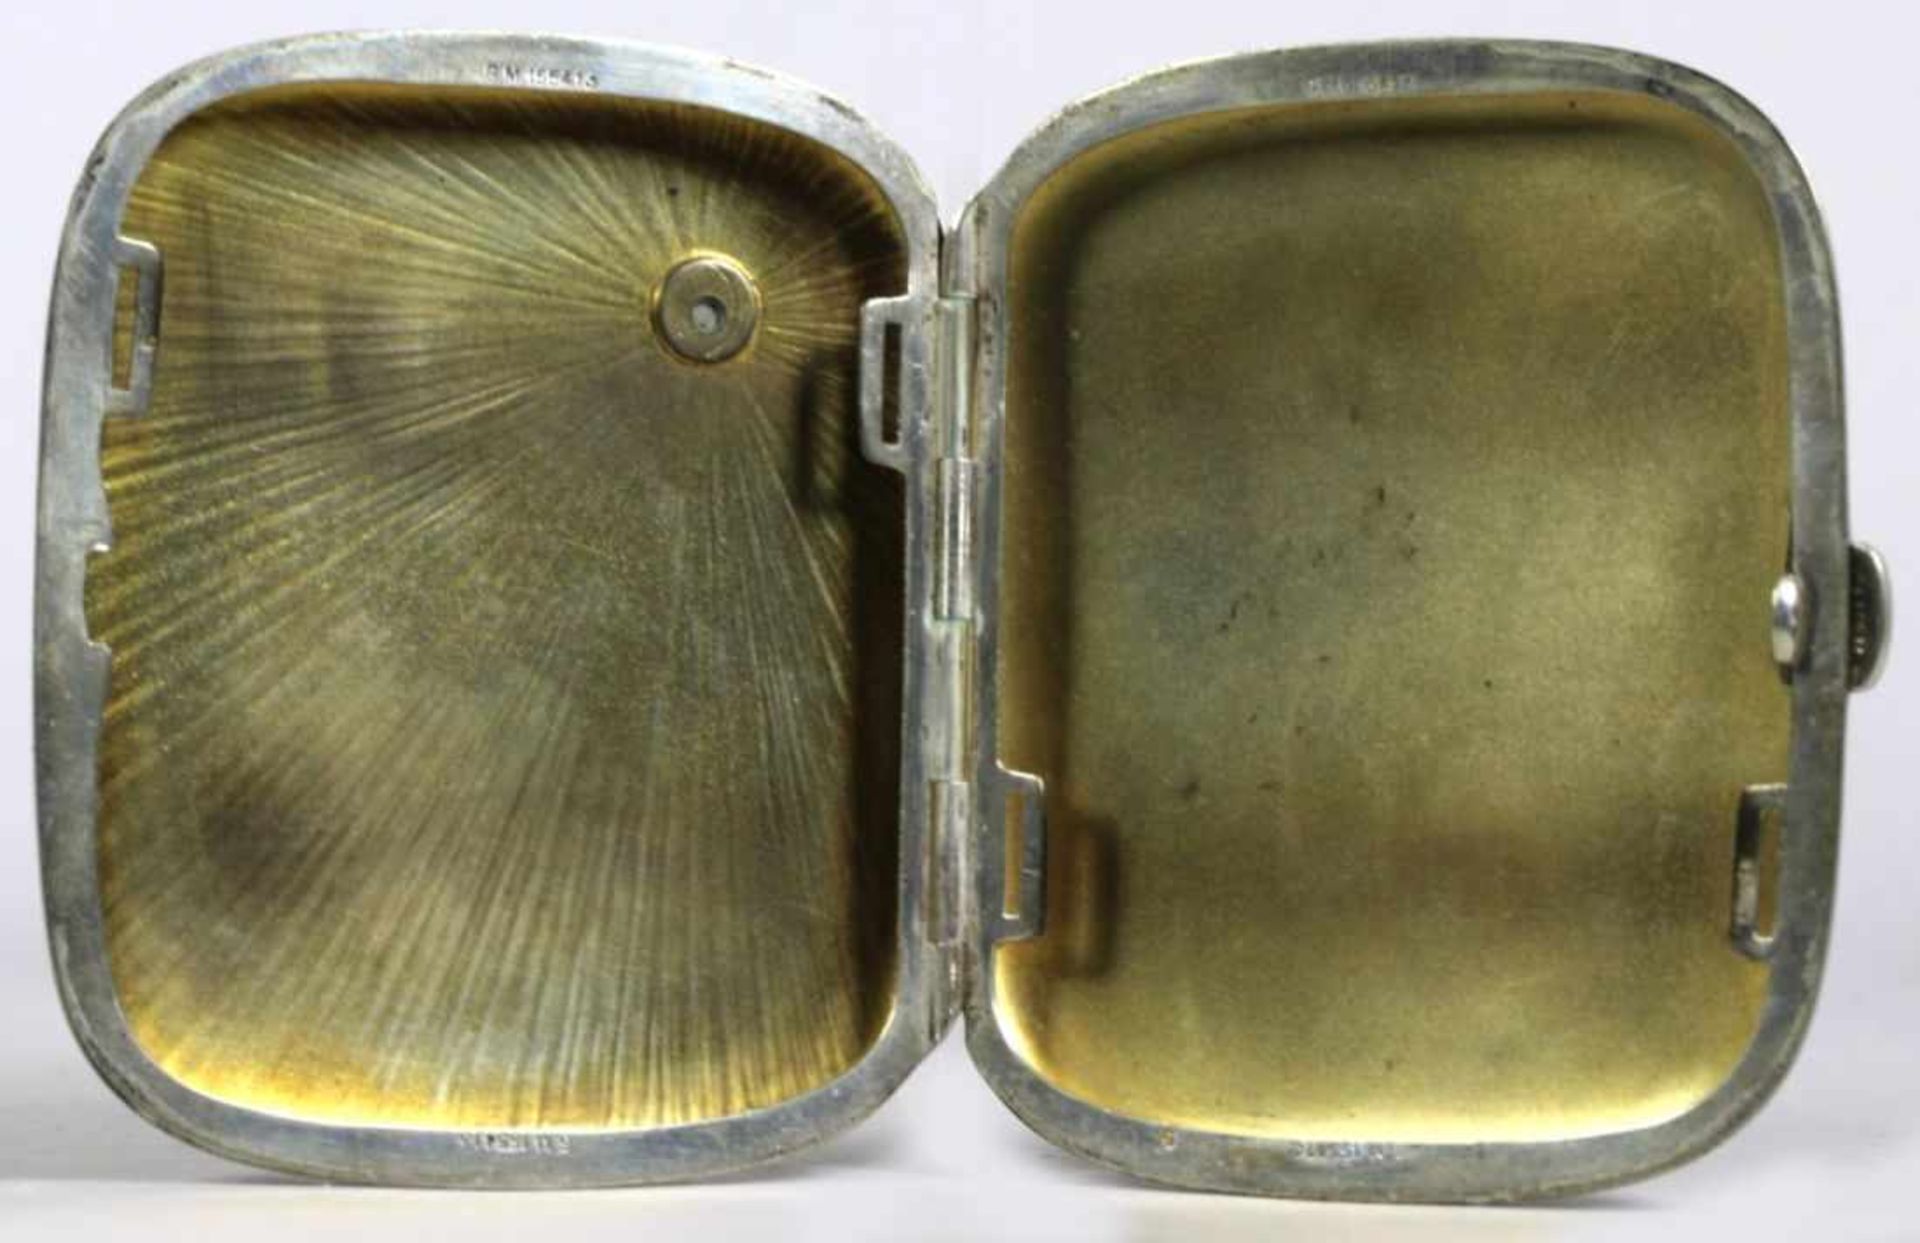 Zigaretten-Etui, dt., 1. Hälfte 20. Jh., Silber 800, gerundet rechteckige Form,scharnierter - Bild 2 aus 4